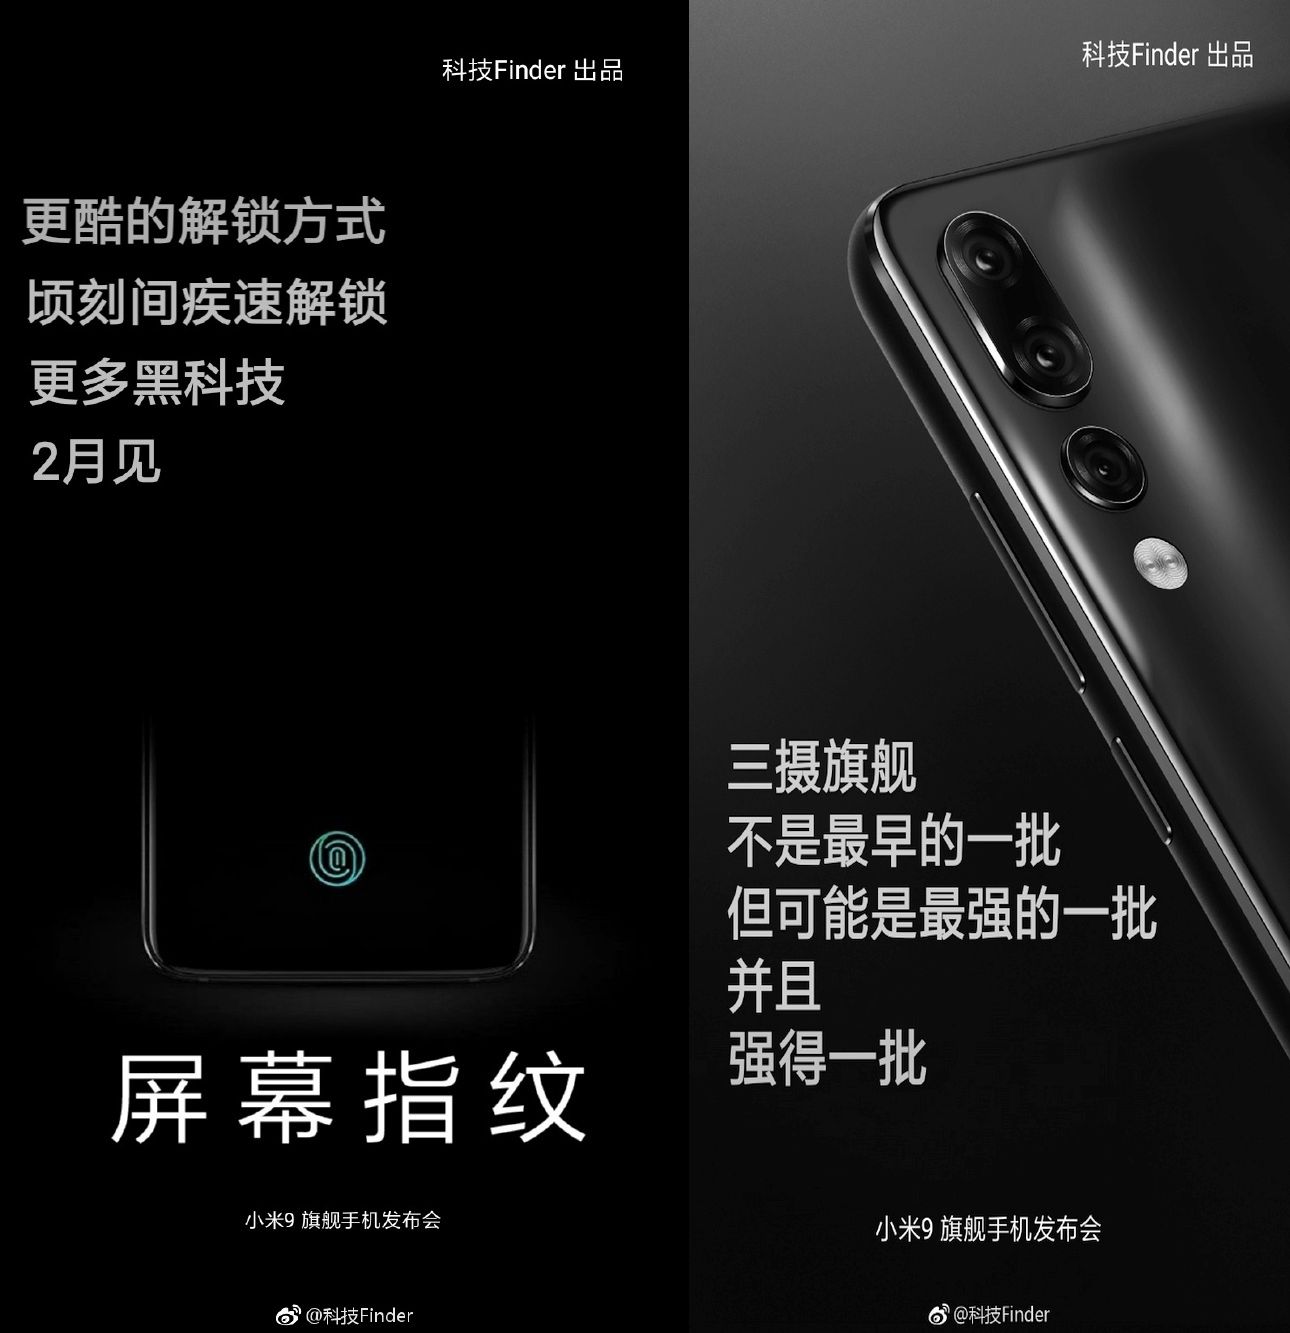 Esta sería la fecha de presentación del Xiaomi Mi 9